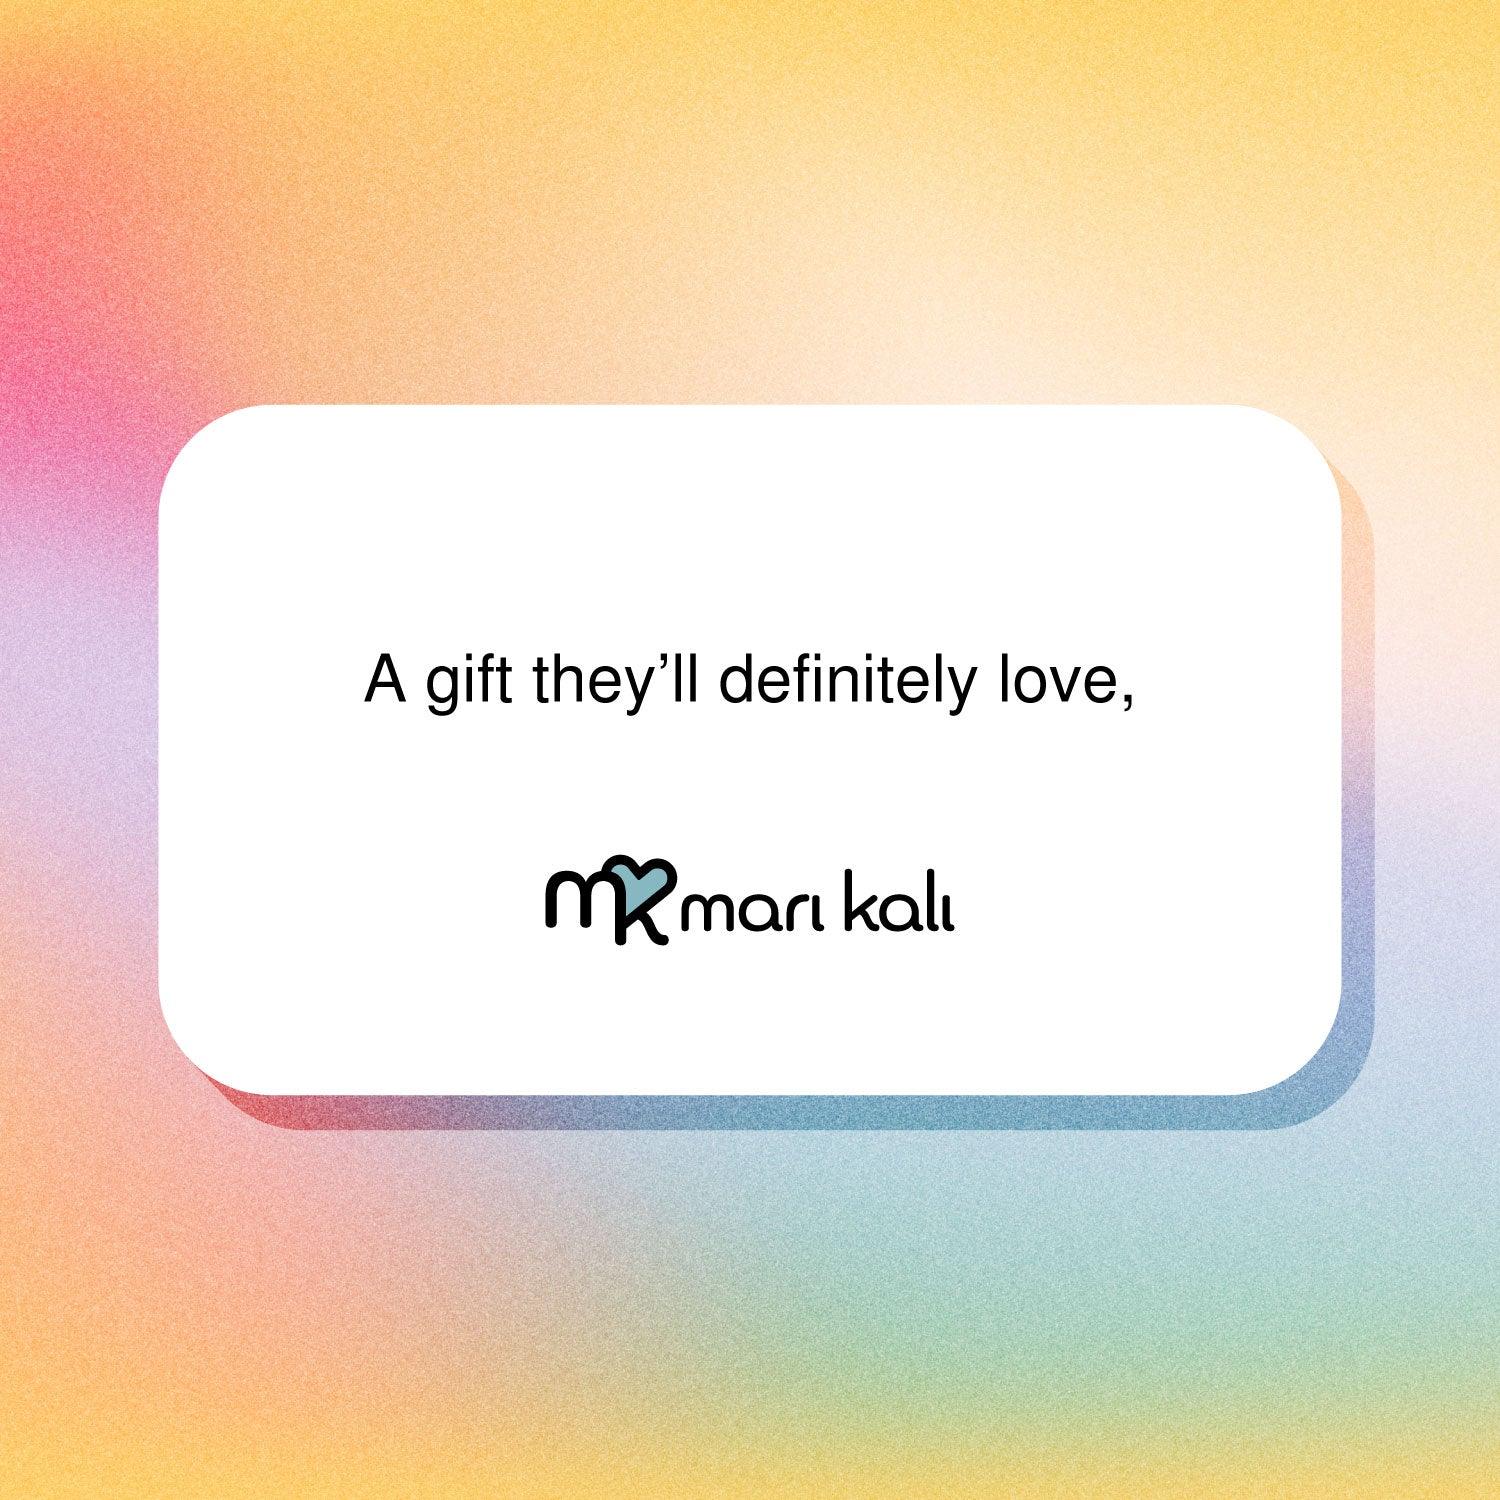 Mari Kali Gift Cards - mk gift card - Mari Kali Stores Cyprus